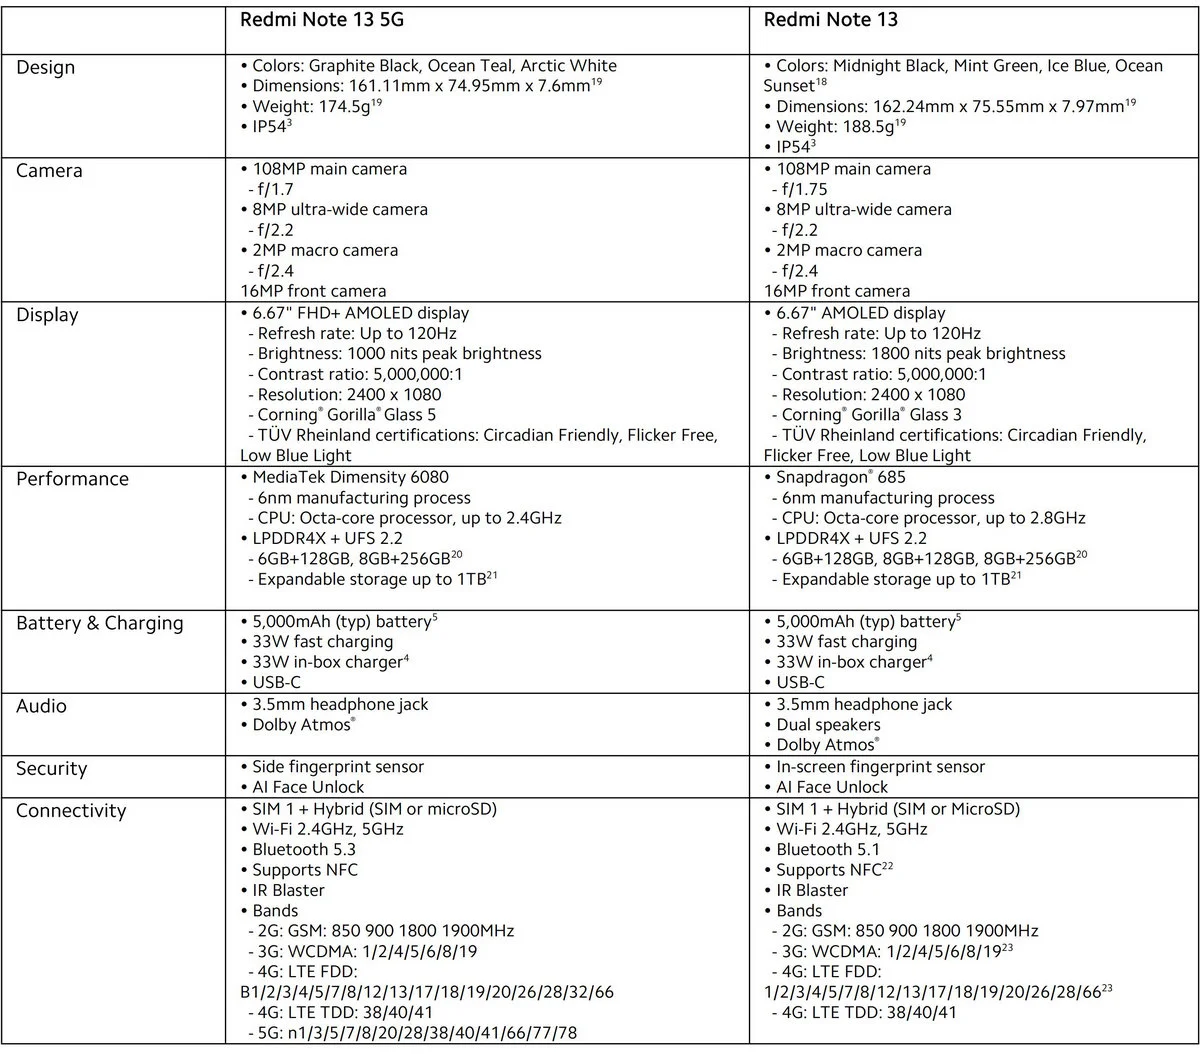 Przegląd specyfikacji serii Redmi Note 13, warianty podstawowe